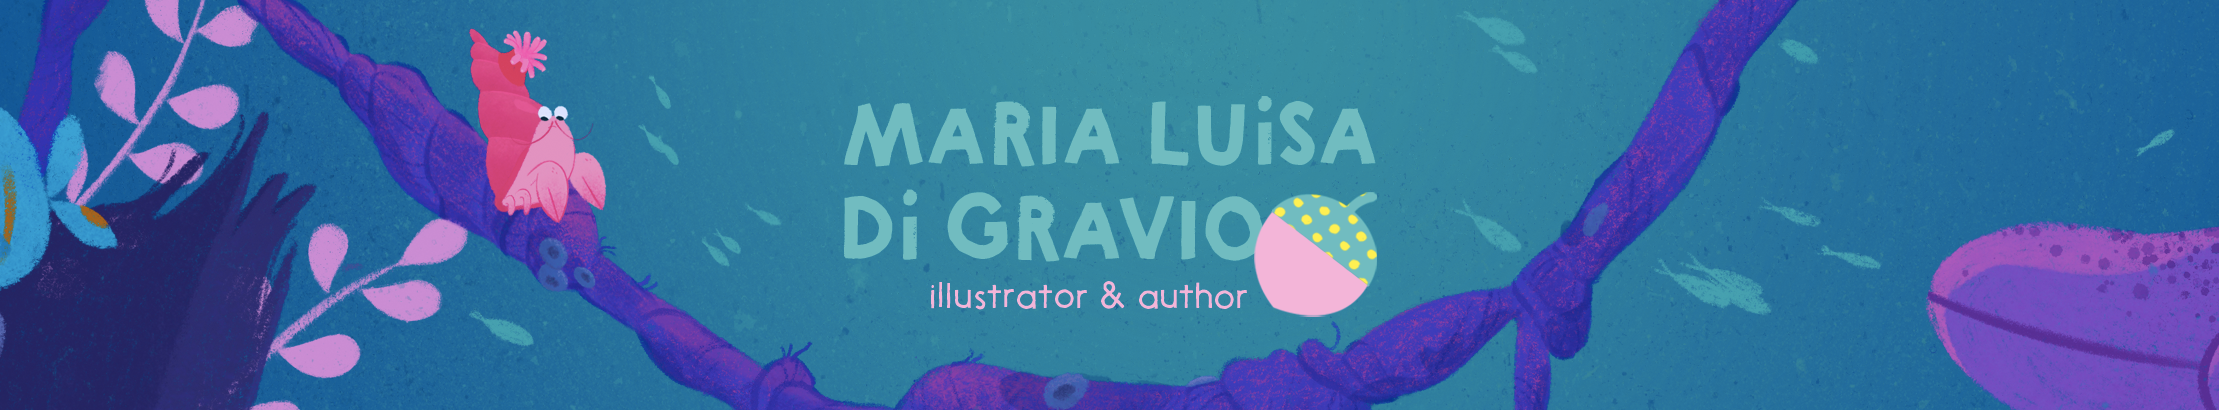 Maria Luisa Di Gravio's profile banner